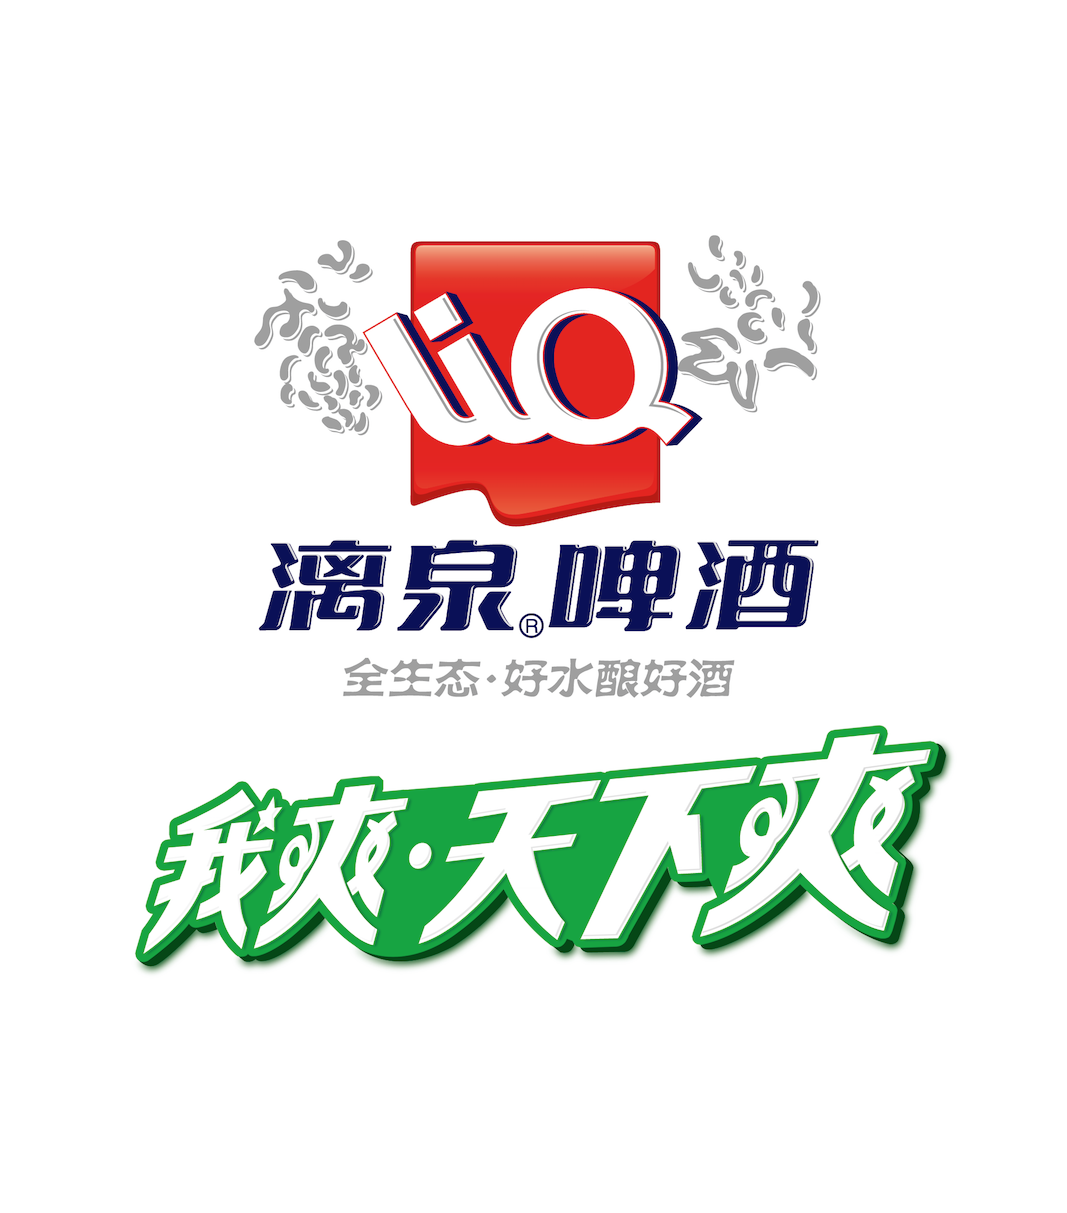 漓泉公关组合logo1.png